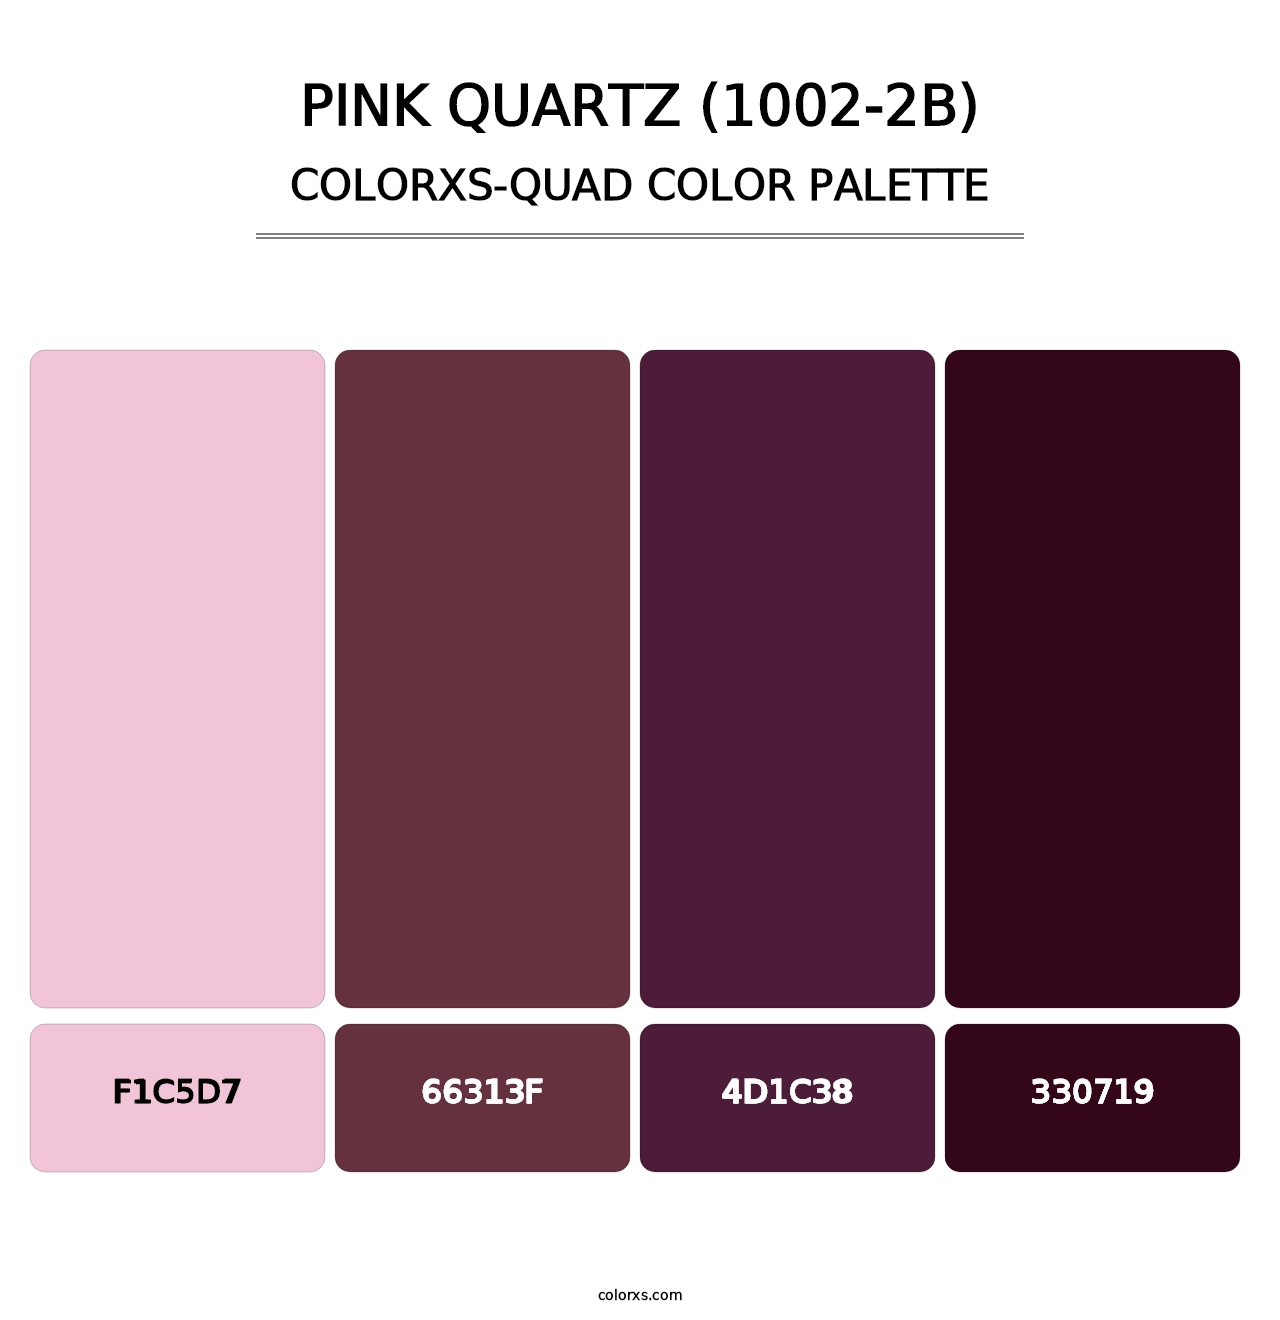 Pink Quartz (1002-2B) - Colorxs Quad Palette